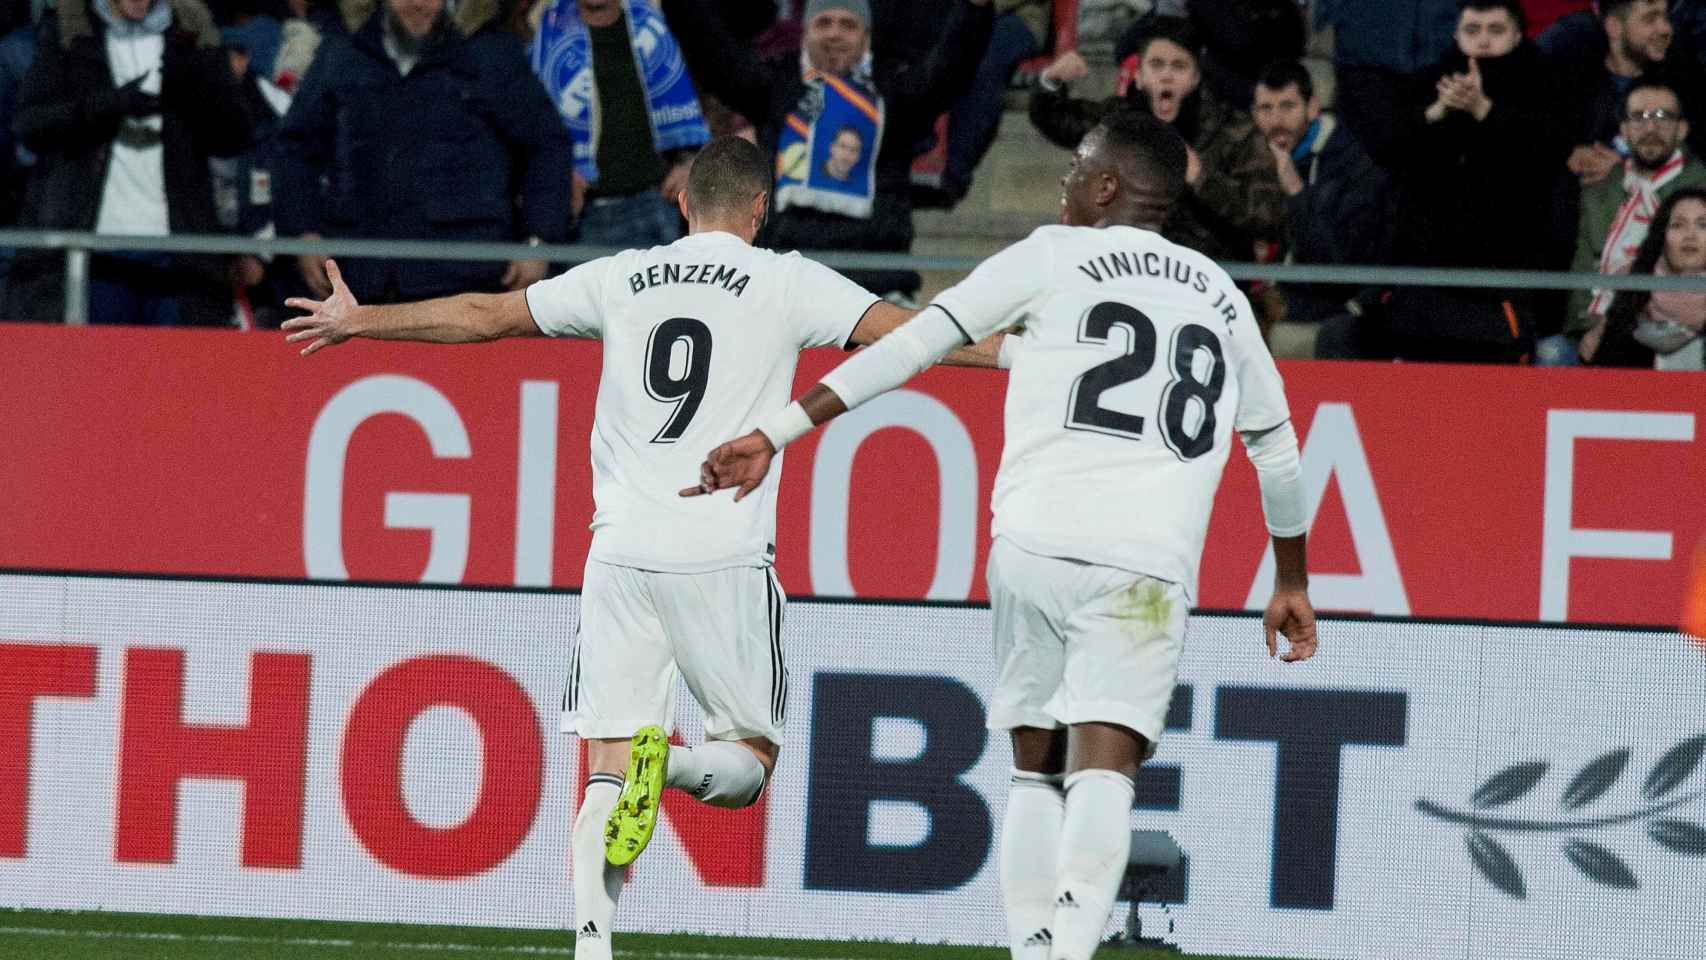 Una foto de Benzema celebrando su gol frente al Girona / EFE